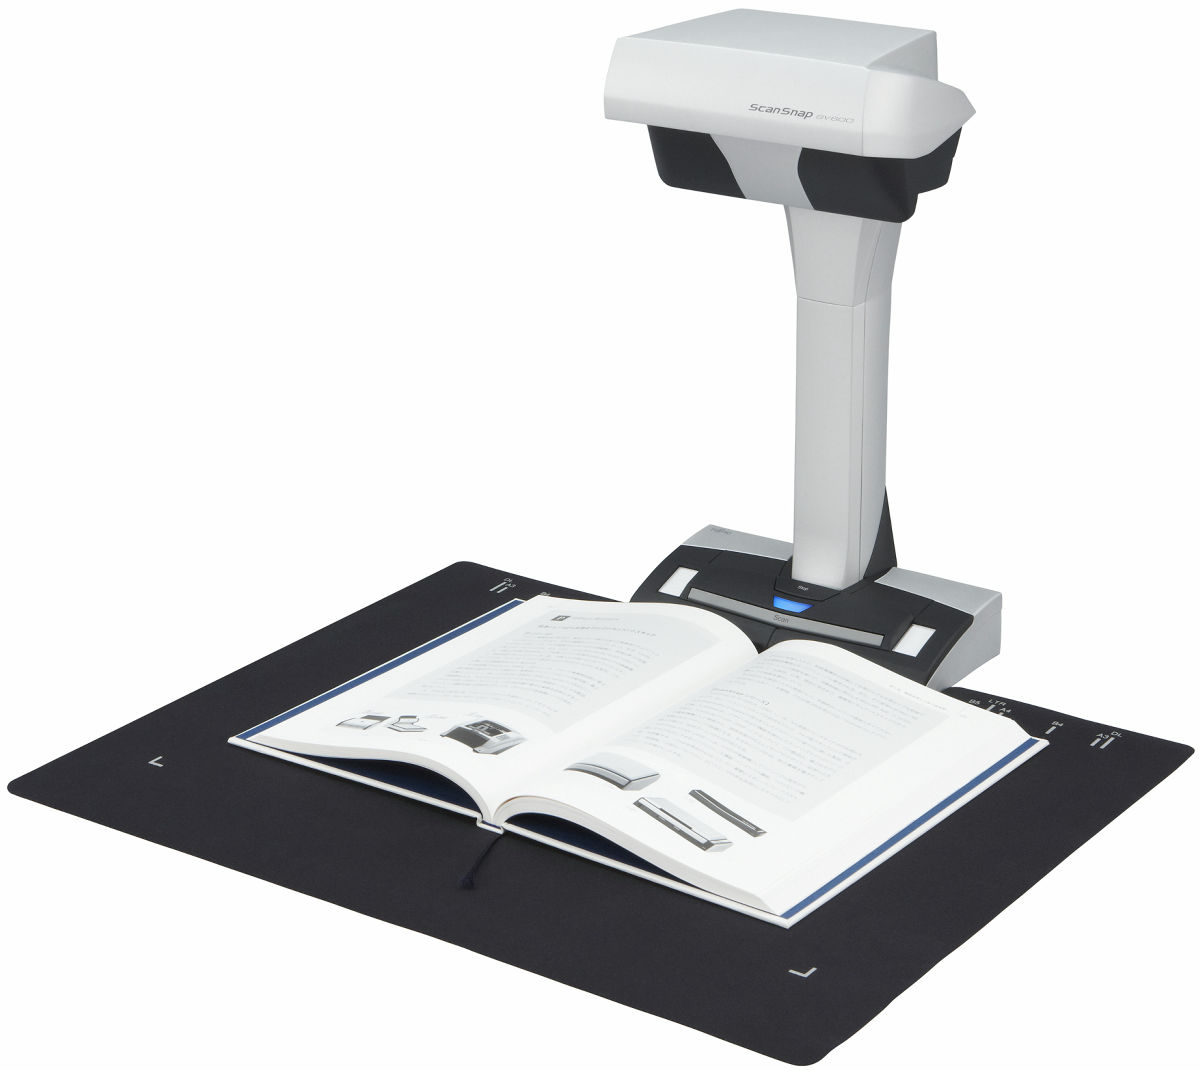 FUJITSU Scanner SnapScan SV600 A3 600dpi USB Book Scanner